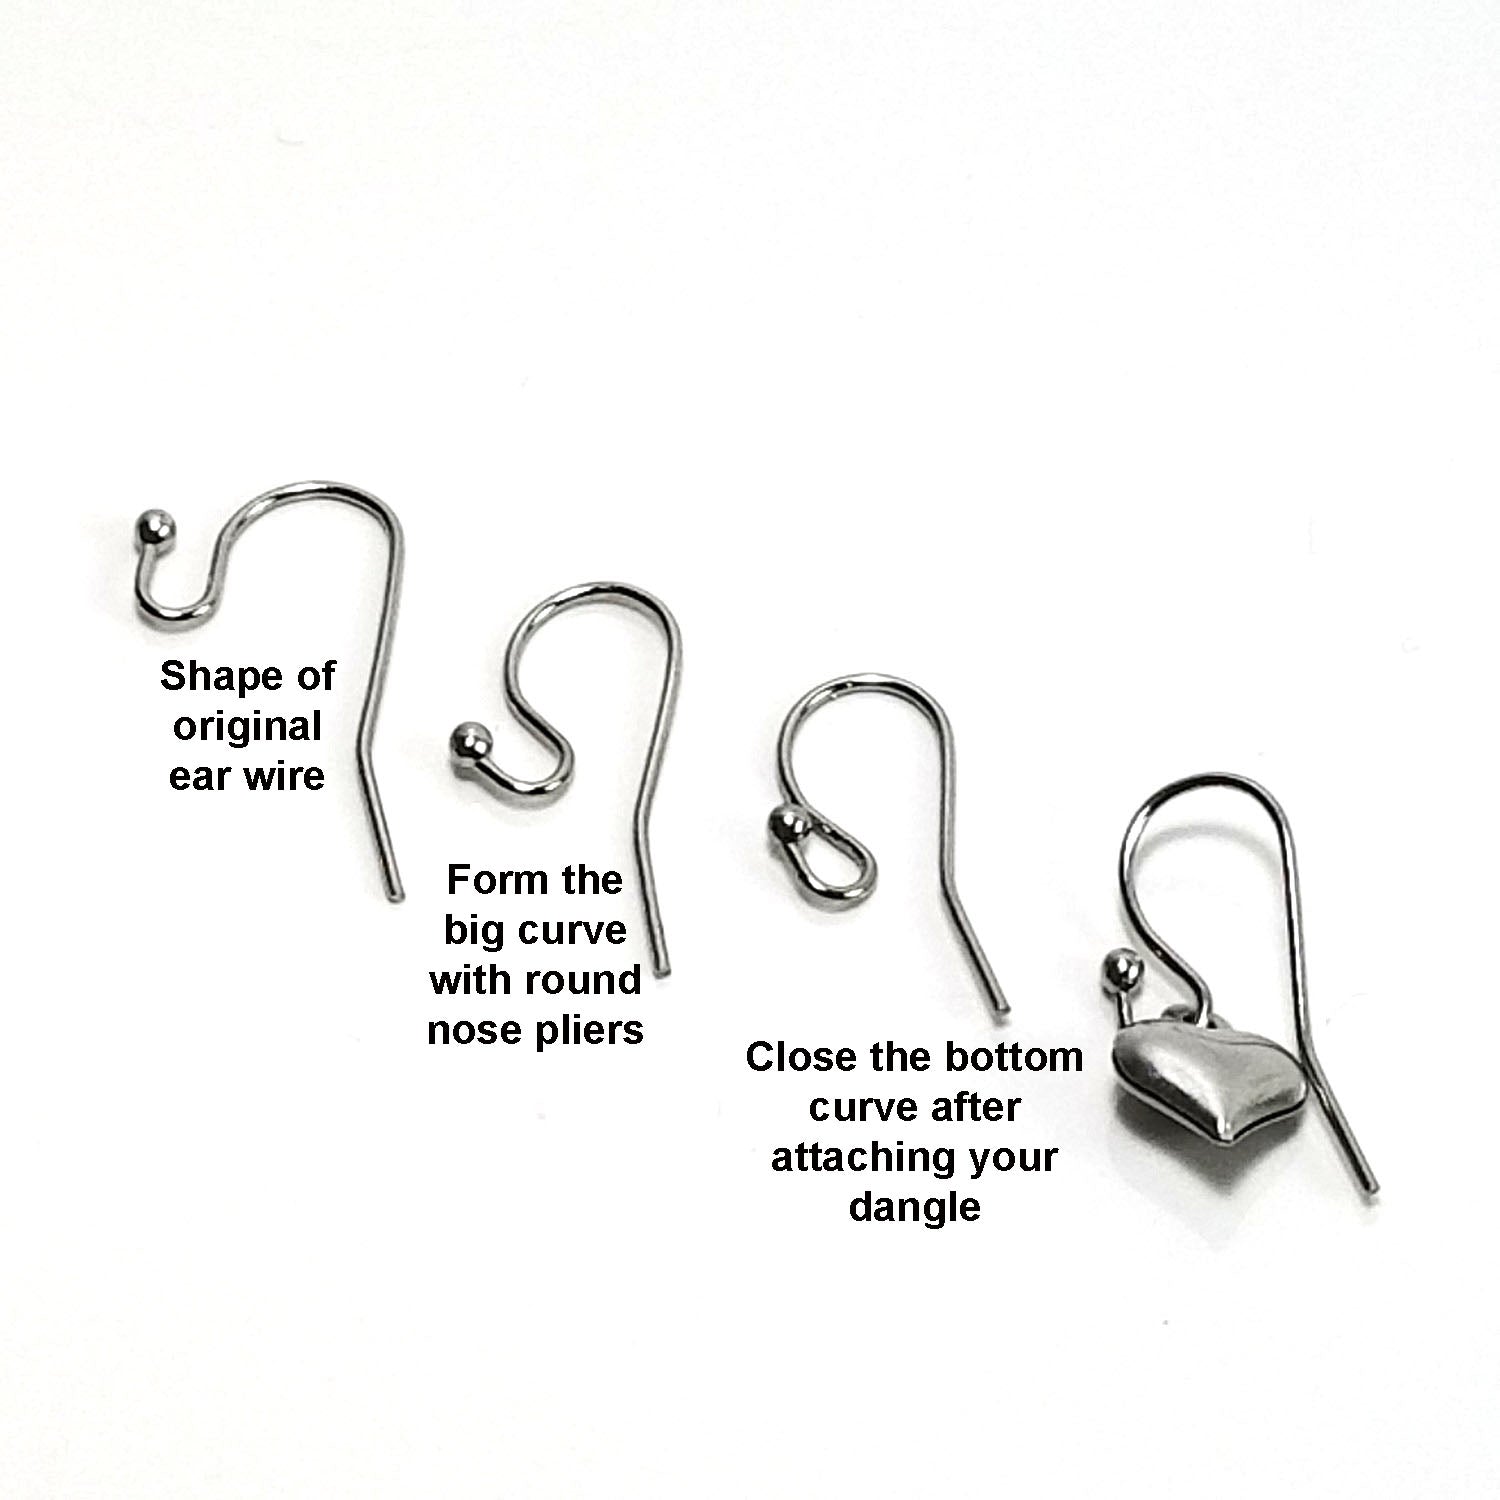 Stainless steel earring hook, Hypoallergenic ear wire findings, Silver